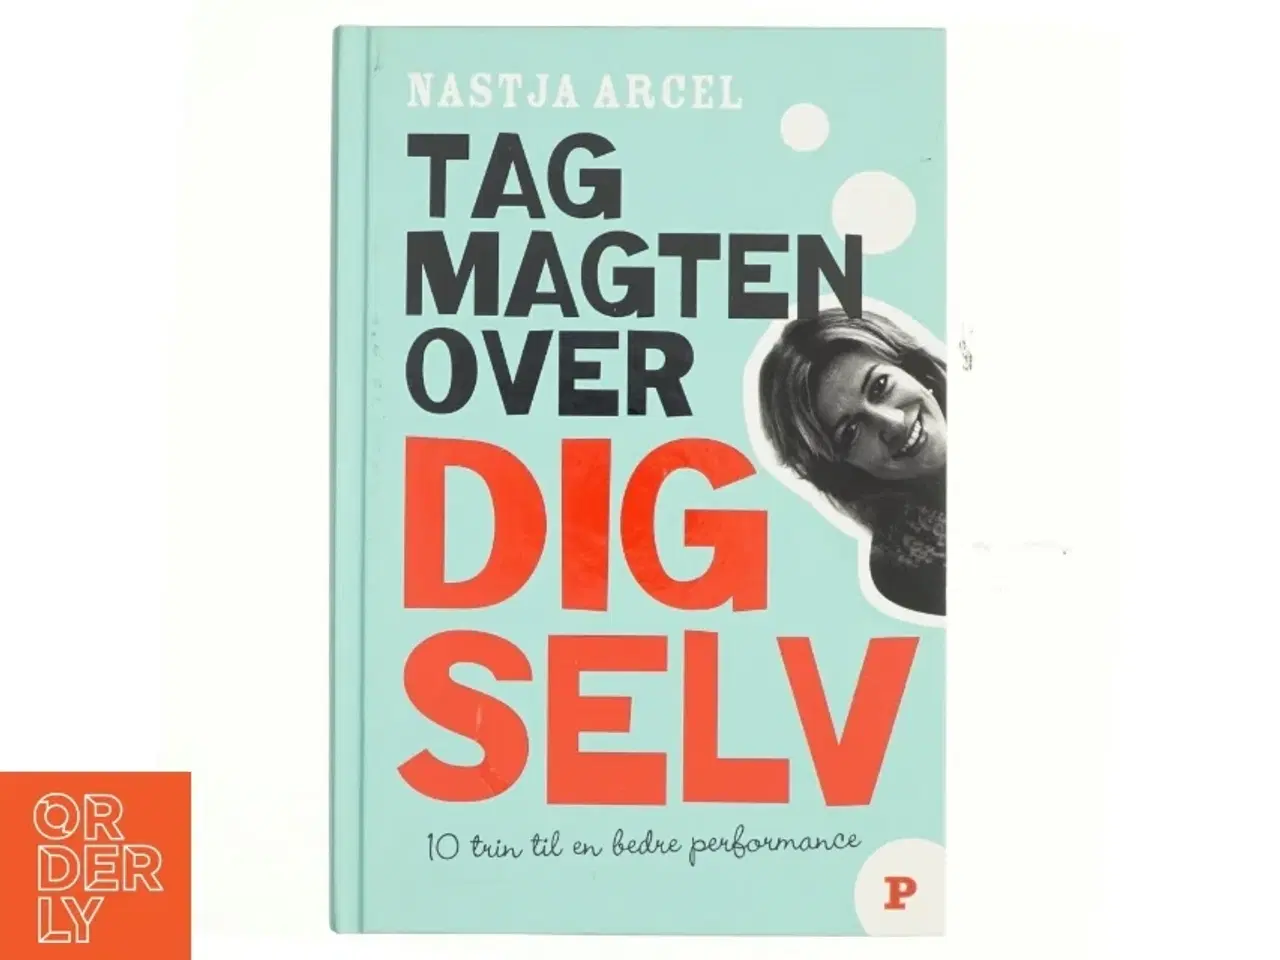 Billede 1 - Tag magten over dig selv : 10 trin til bedre personlig performance af Nastja Arcel (Bog)